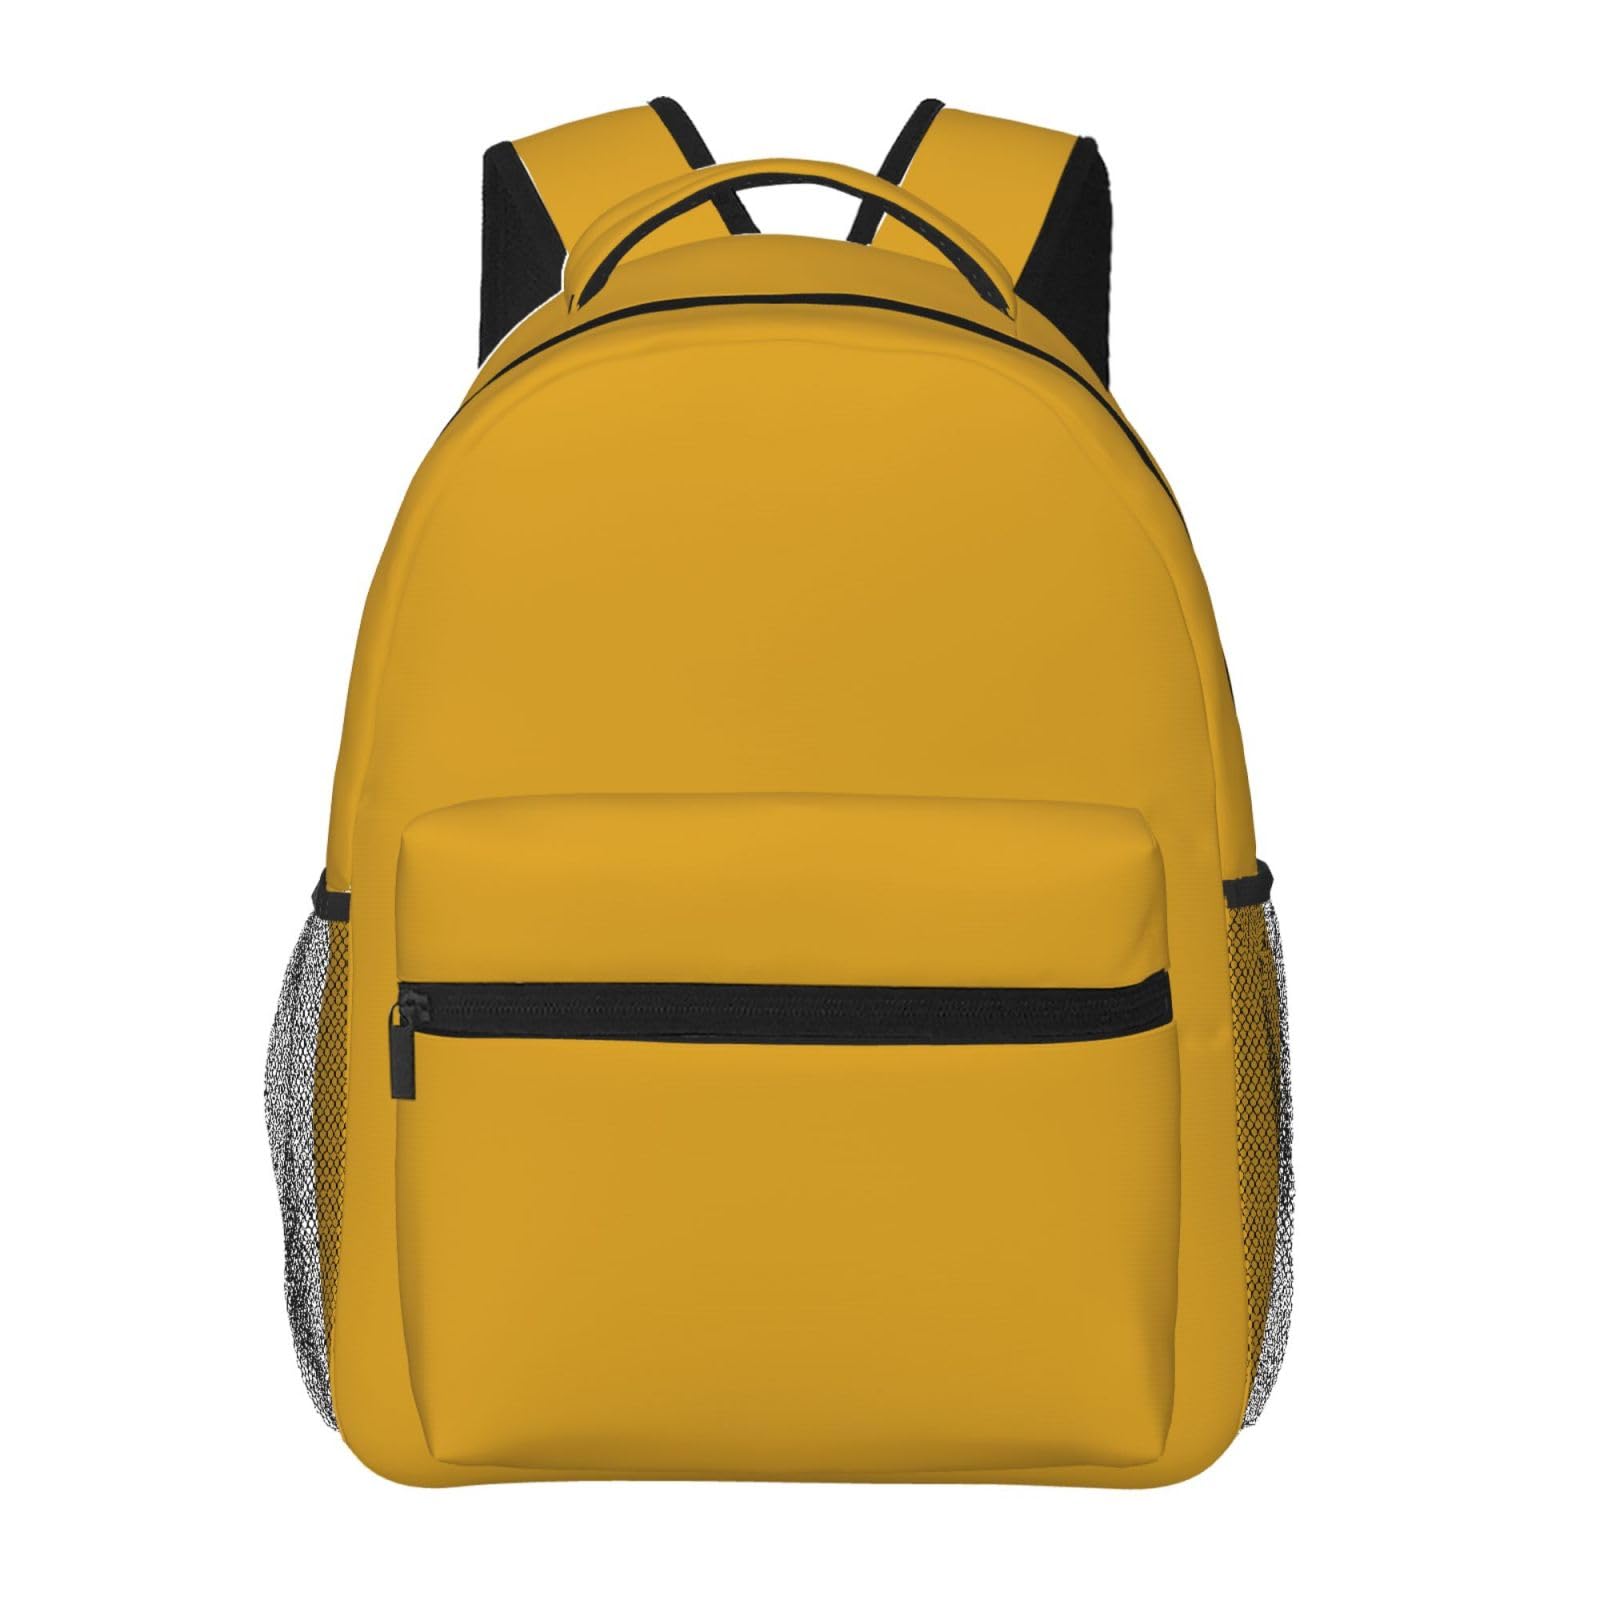 送料無料Natural Yellow Printed Laptop Backpack Fashion Lightweight Ergonomic Backpacks Casual Travel Daypack For Women Me